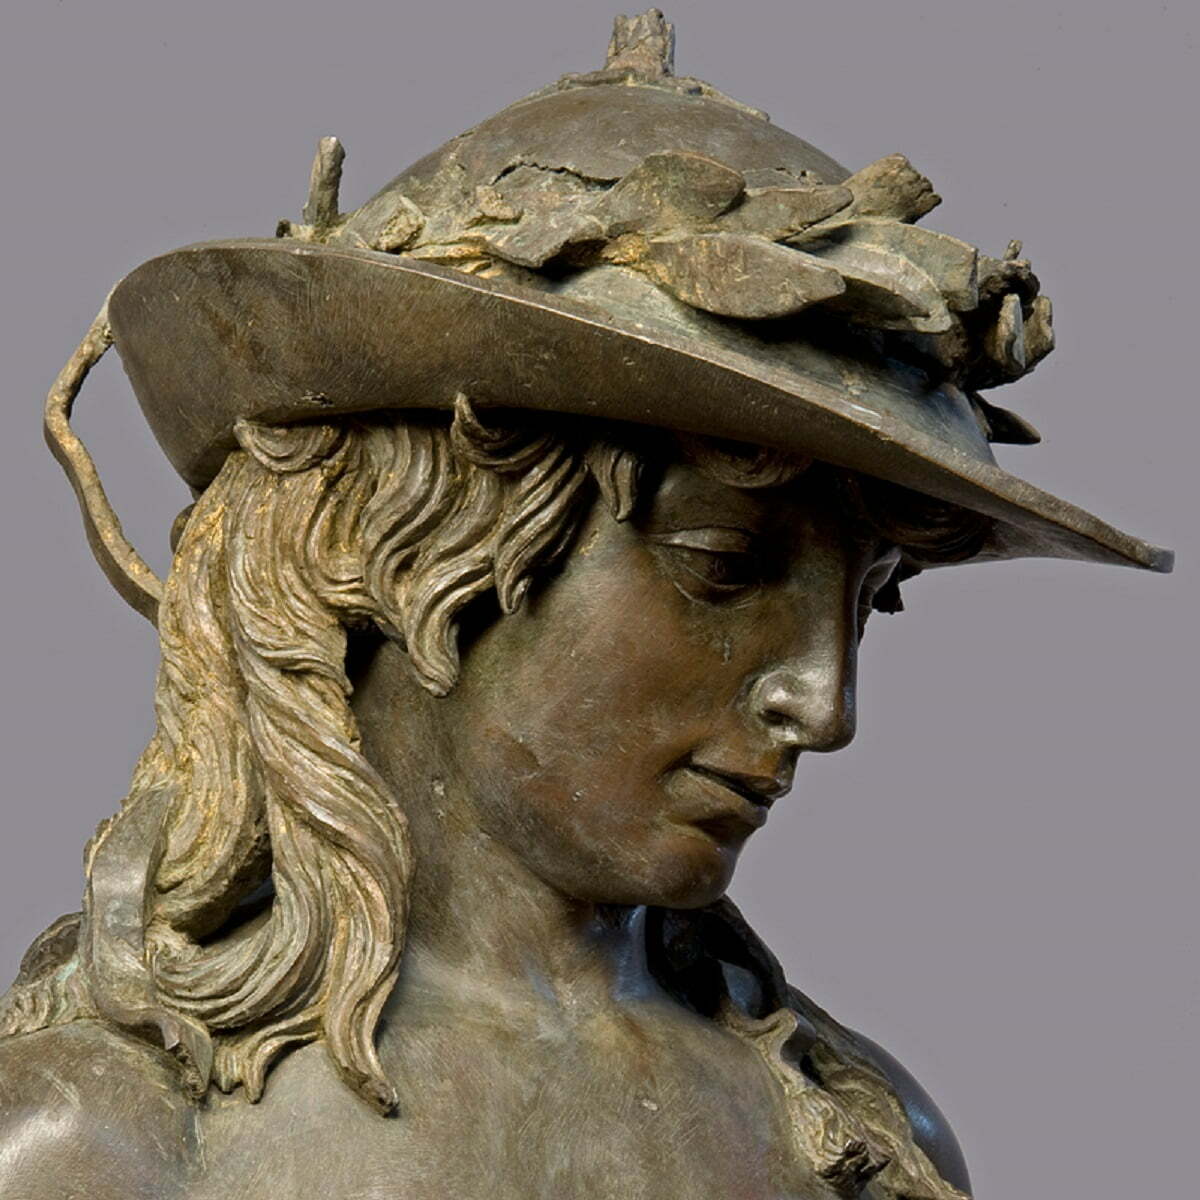 Prima expoziție majoră dedicată lui Donatello în aproape 40 de ani la Florența